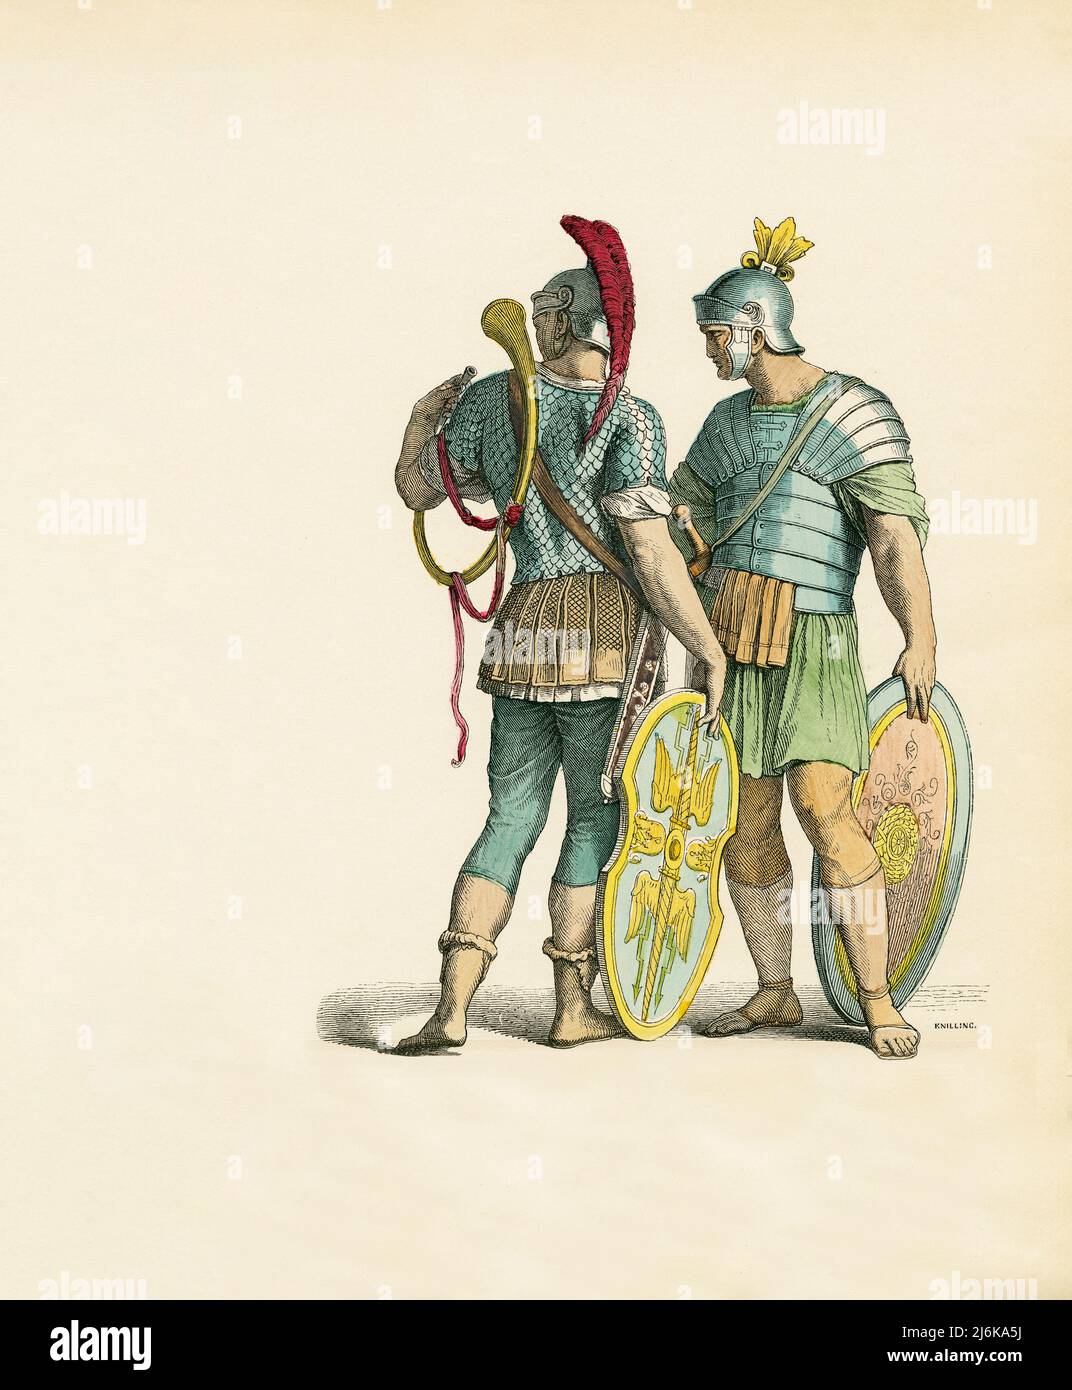 Deux soldats romains, Rome antique, Illustration, l'Histoire du Costume, Braun & Schneider, Munich, Allemagne, 1861-1880 Banque D'Images